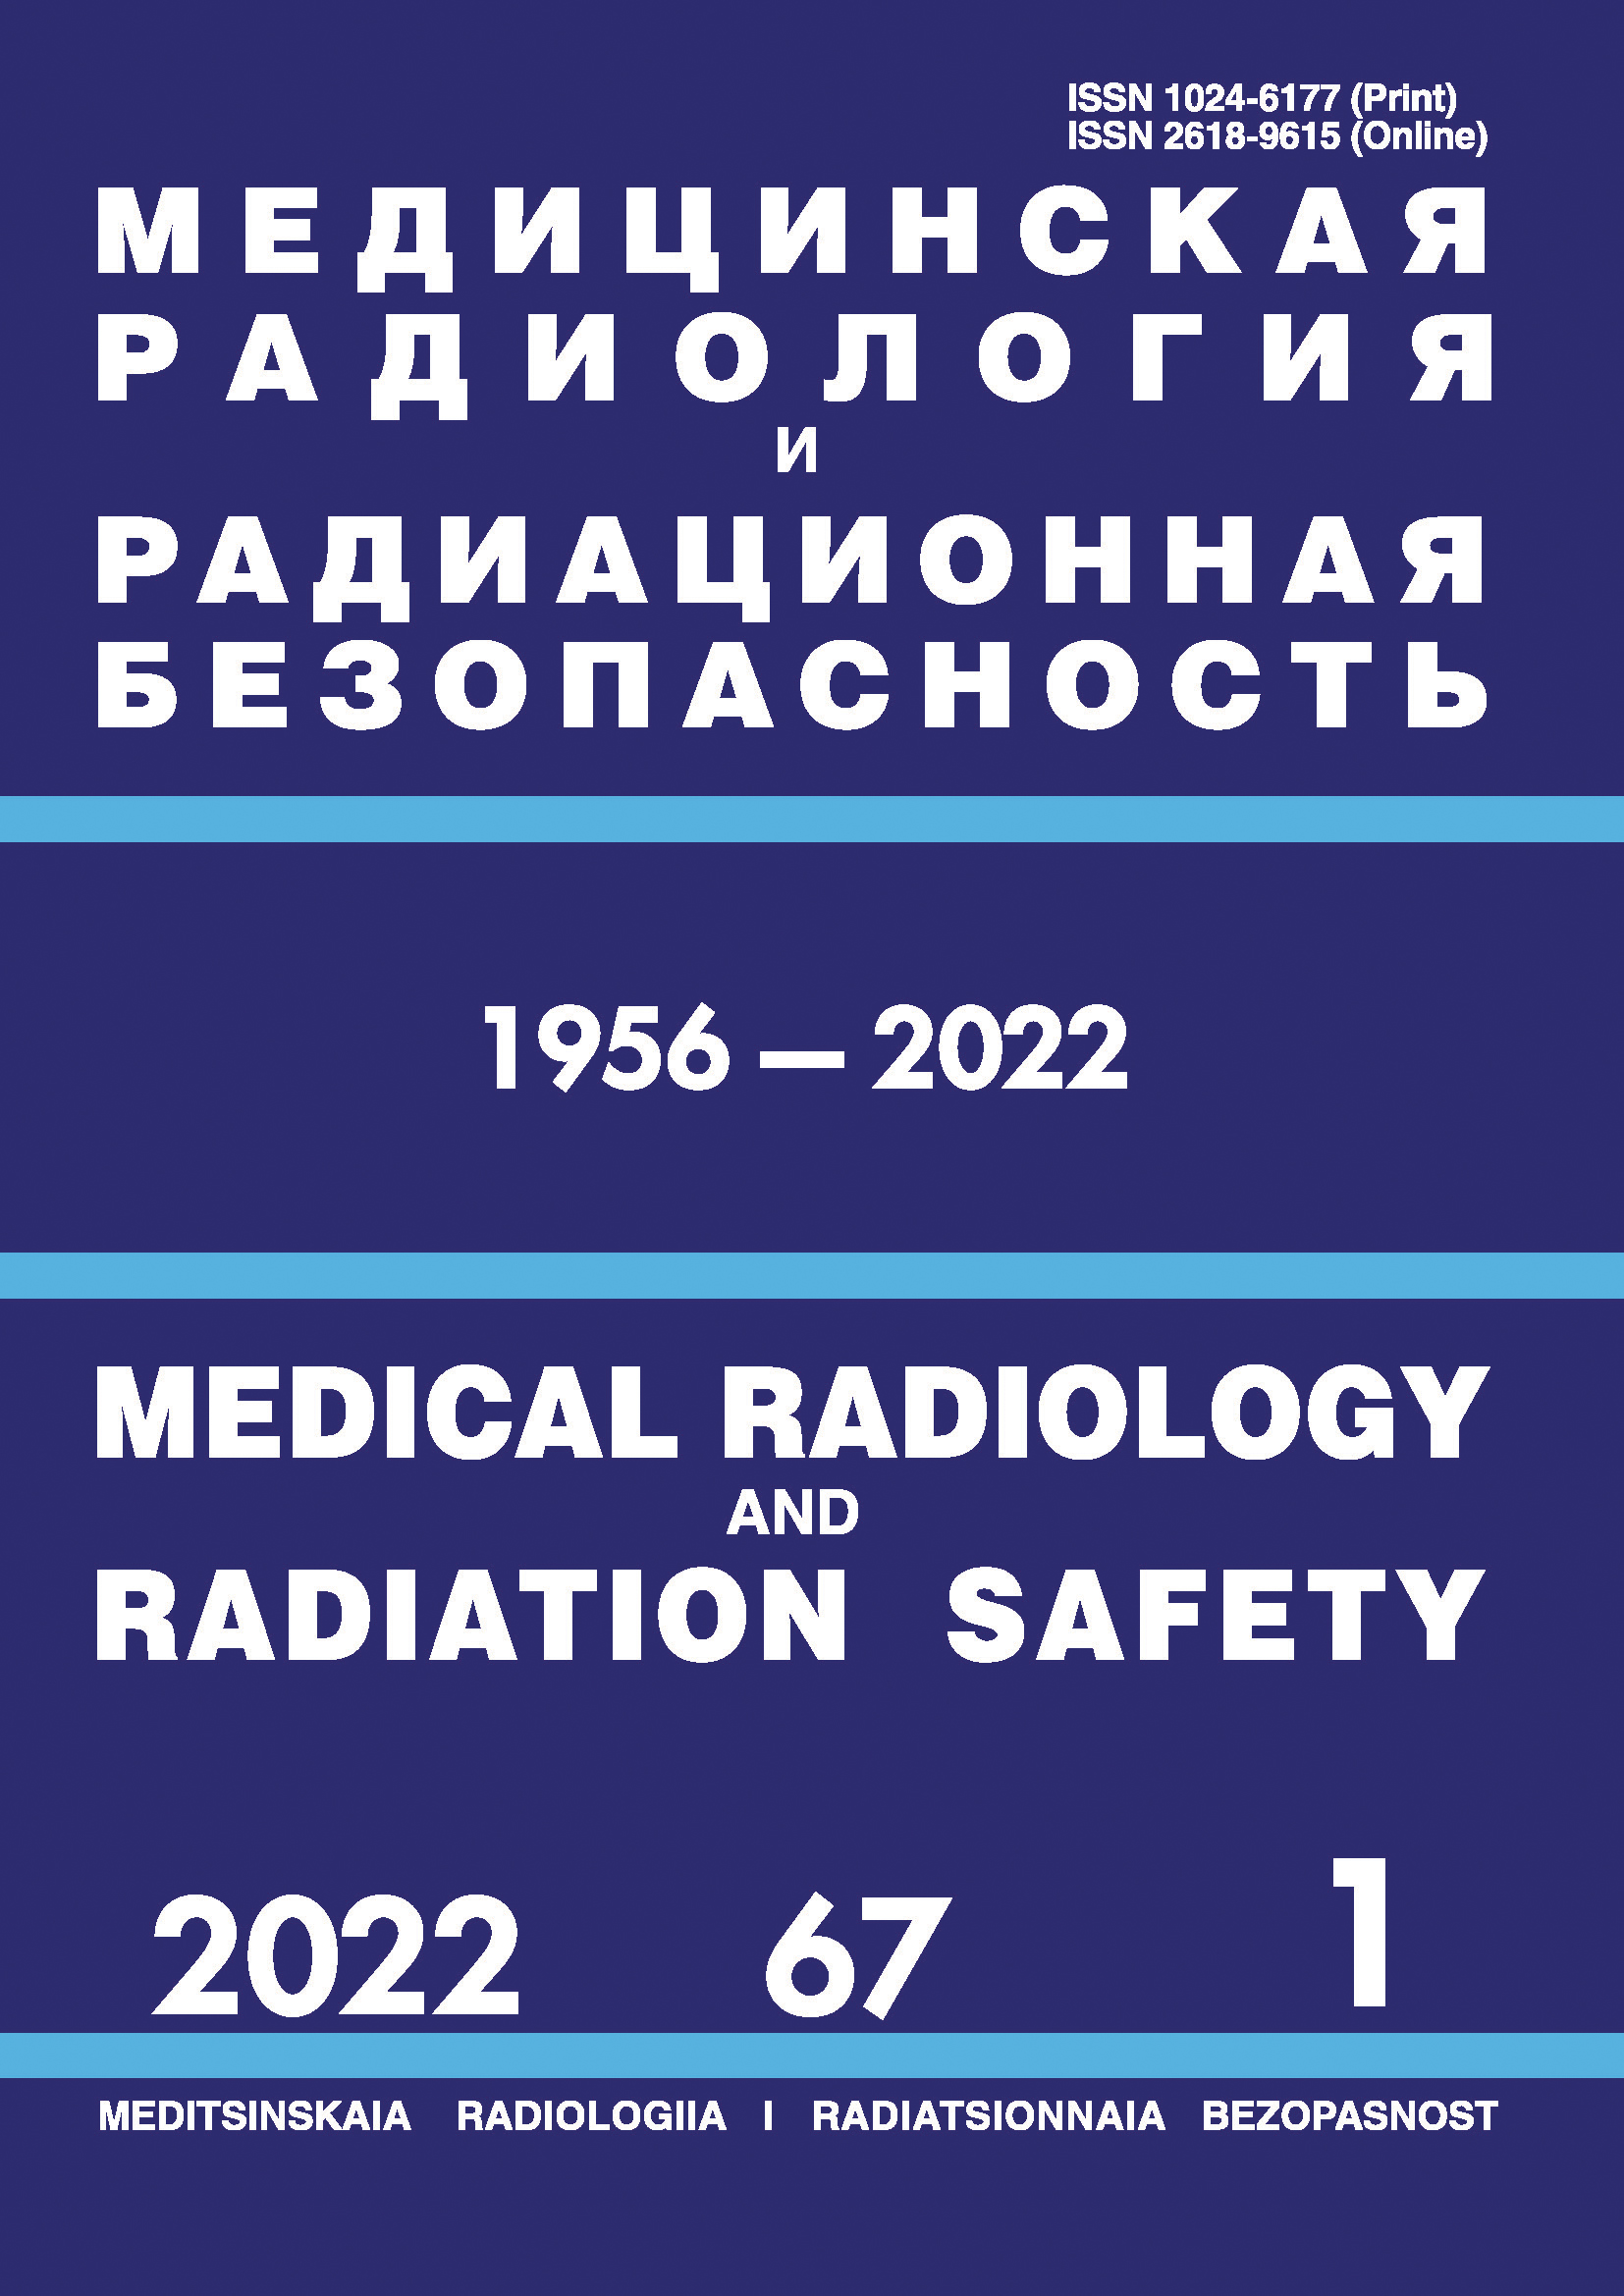             Медицинская радиология и радиационная безопасность
    